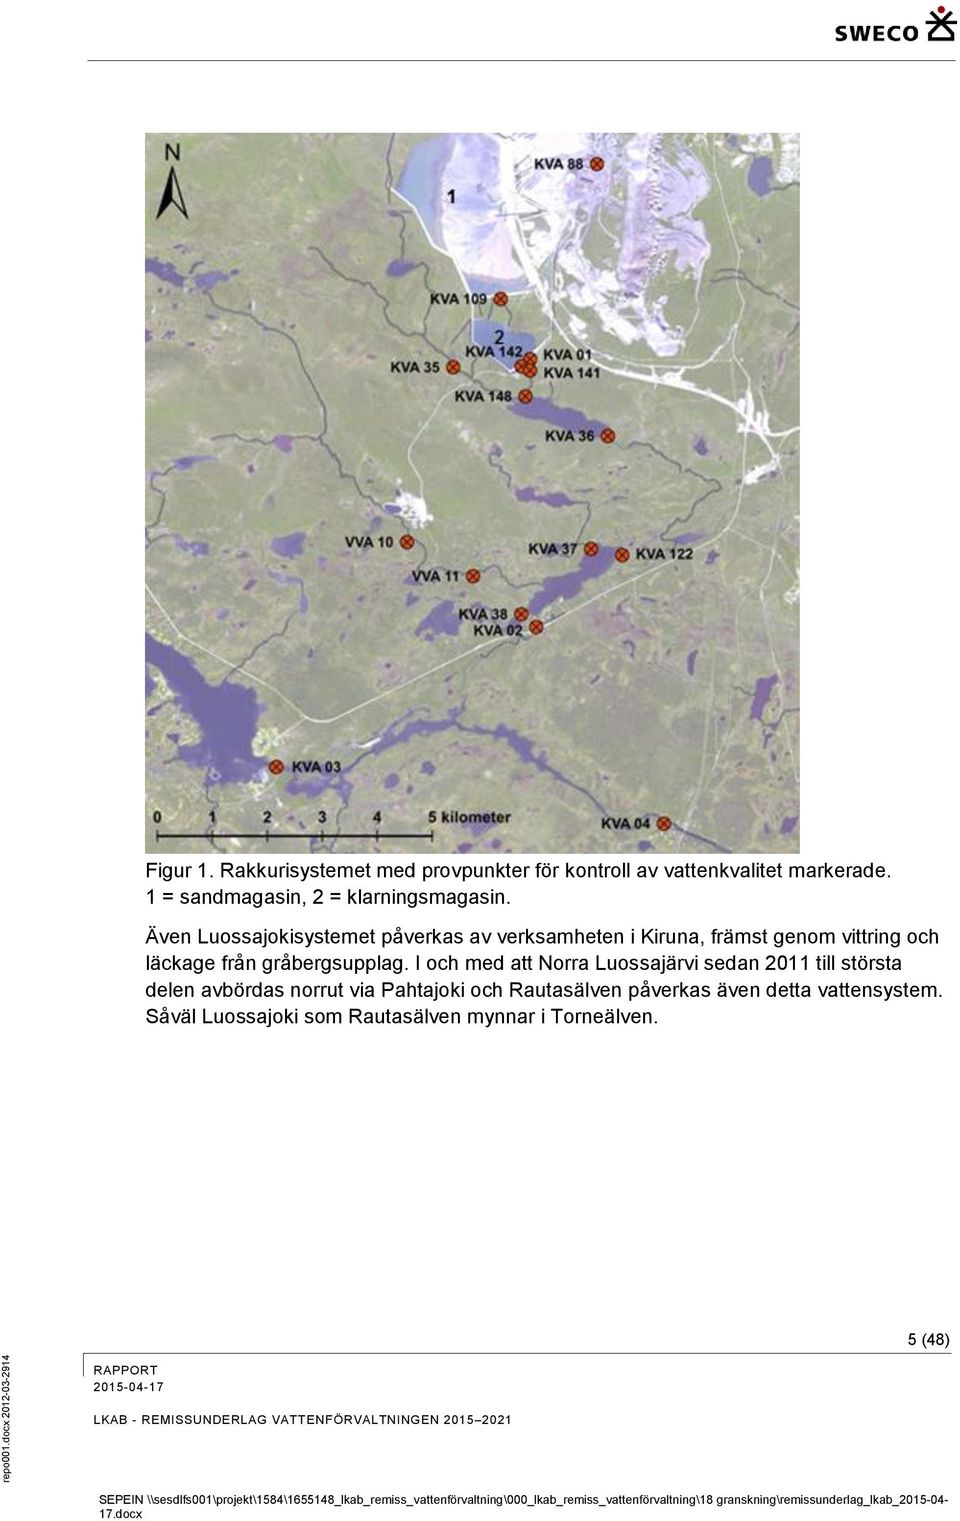 Även Luossajokisystemet påverkas av verksamheten i Kiruna, främst genom vittring och läckage från gråbergsupplag.